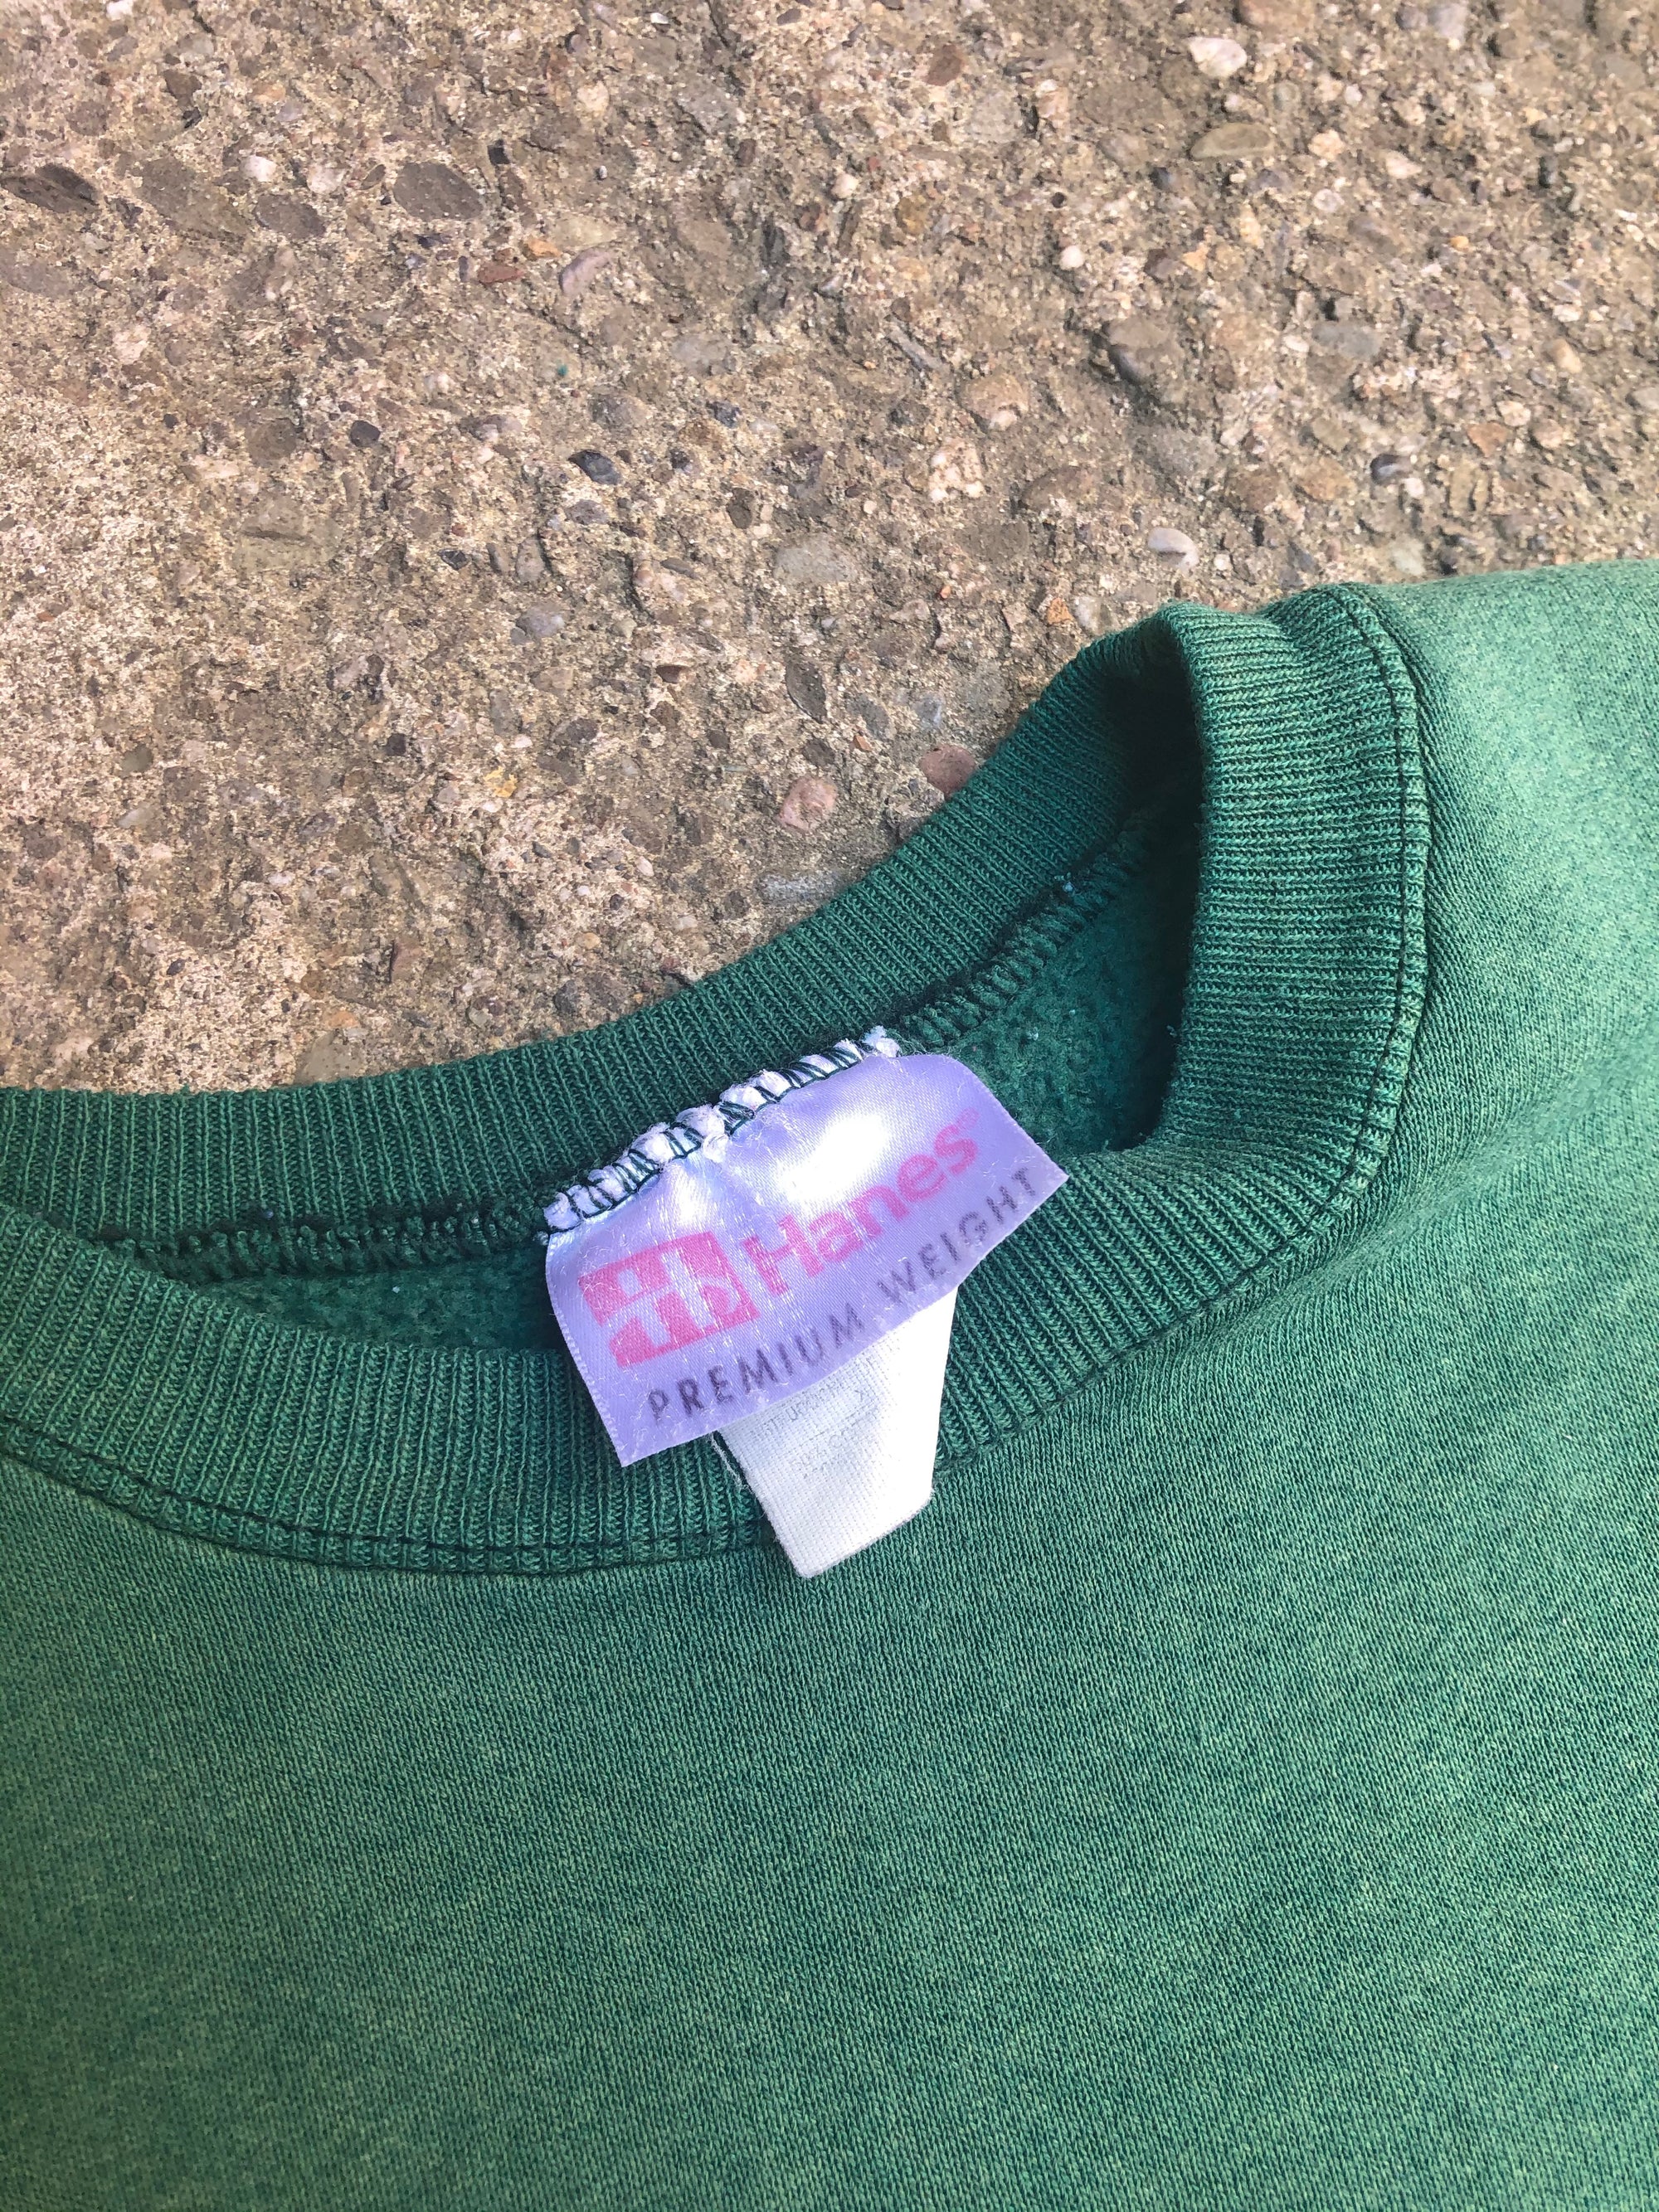 1990s Faded Green Blank Painter Sweatshirt